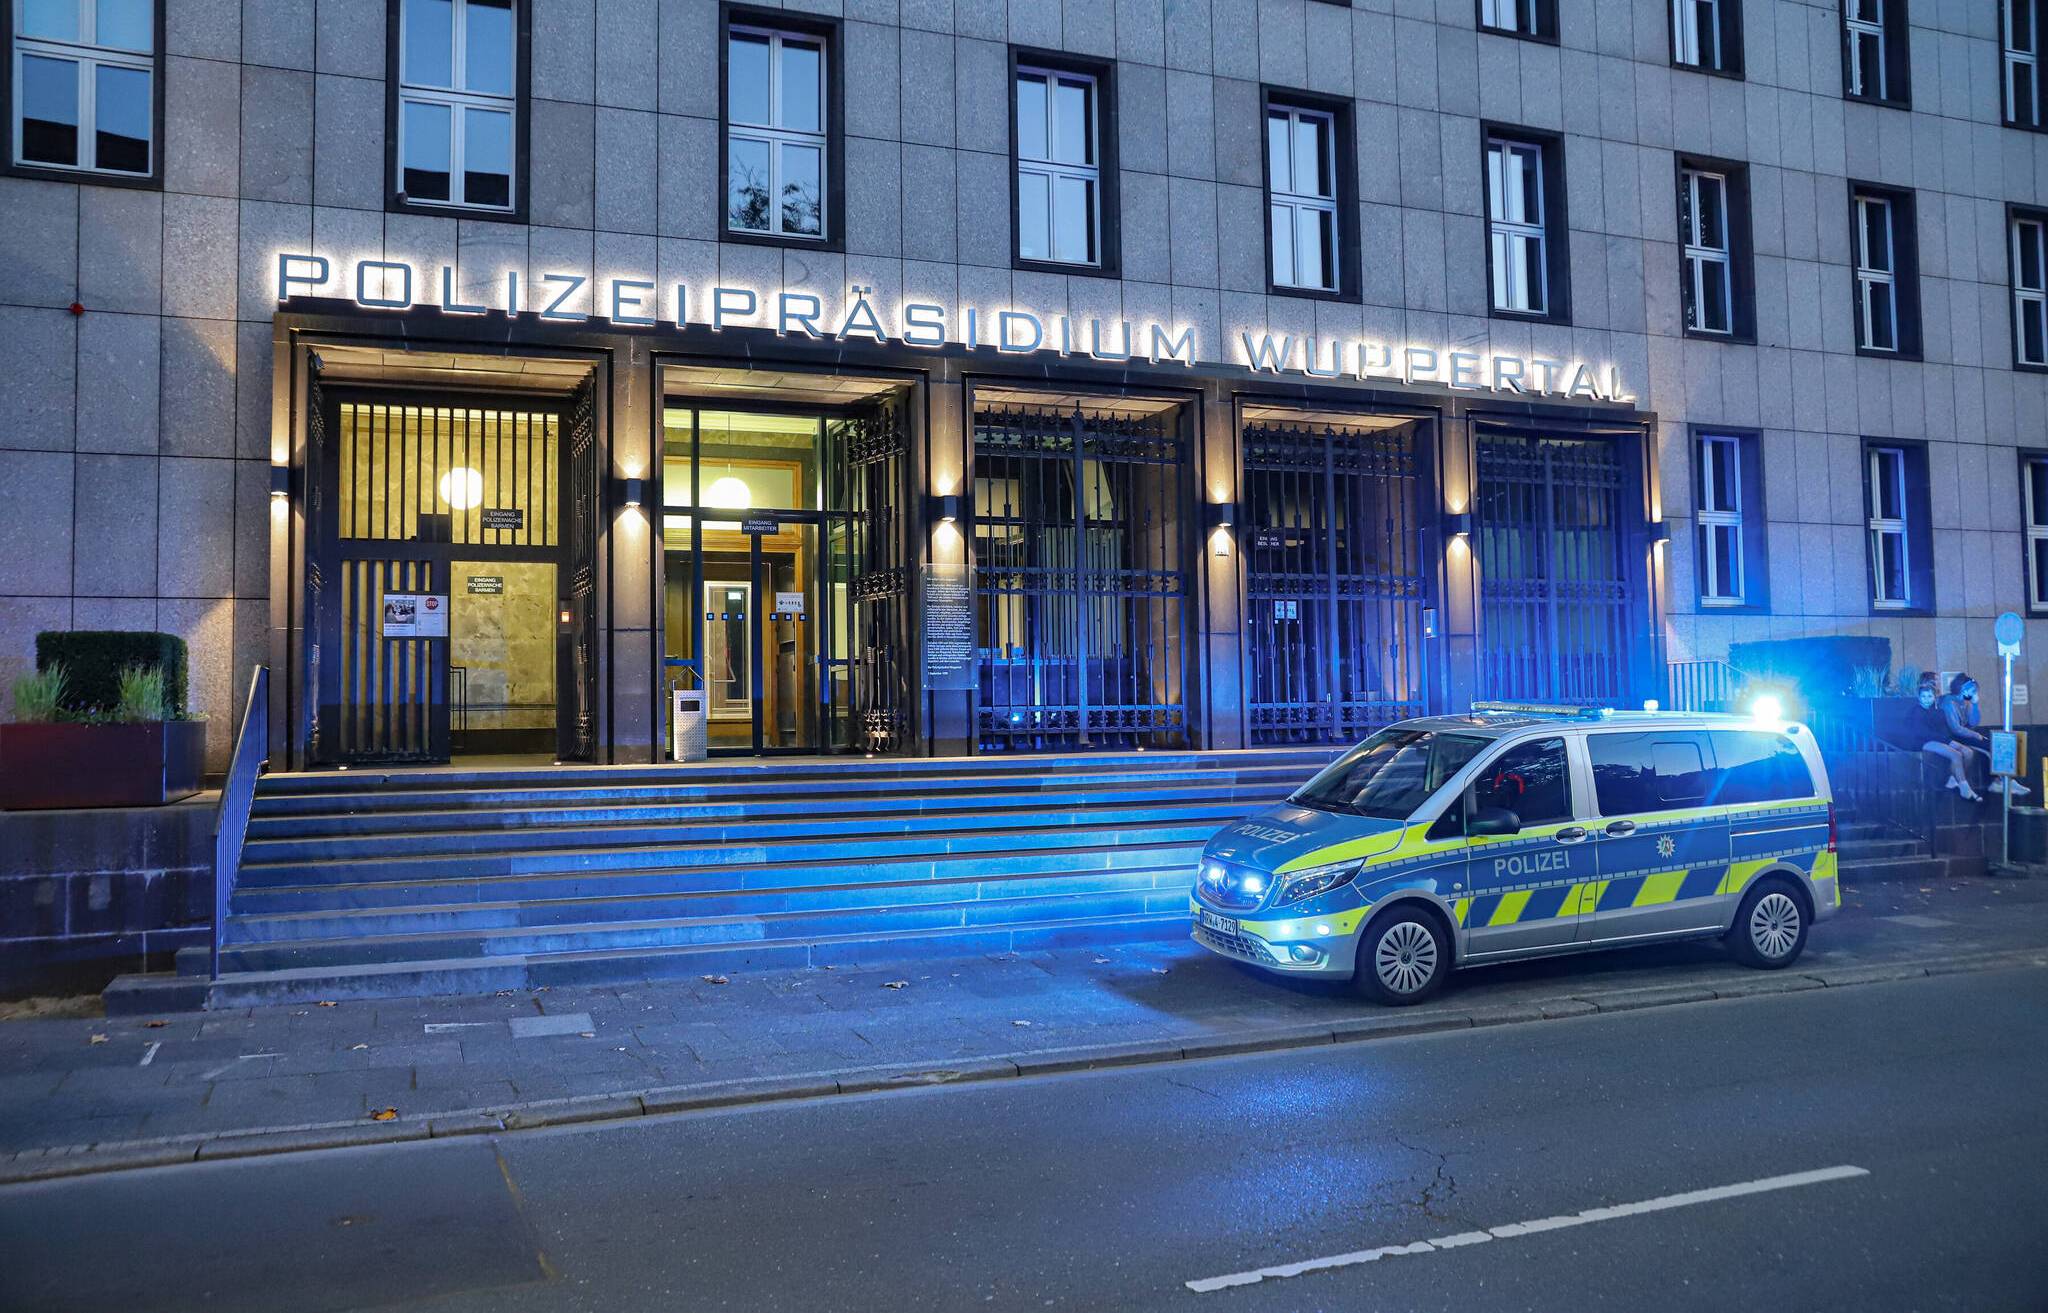  Das Wuppertaler Polizeipräsidium. 